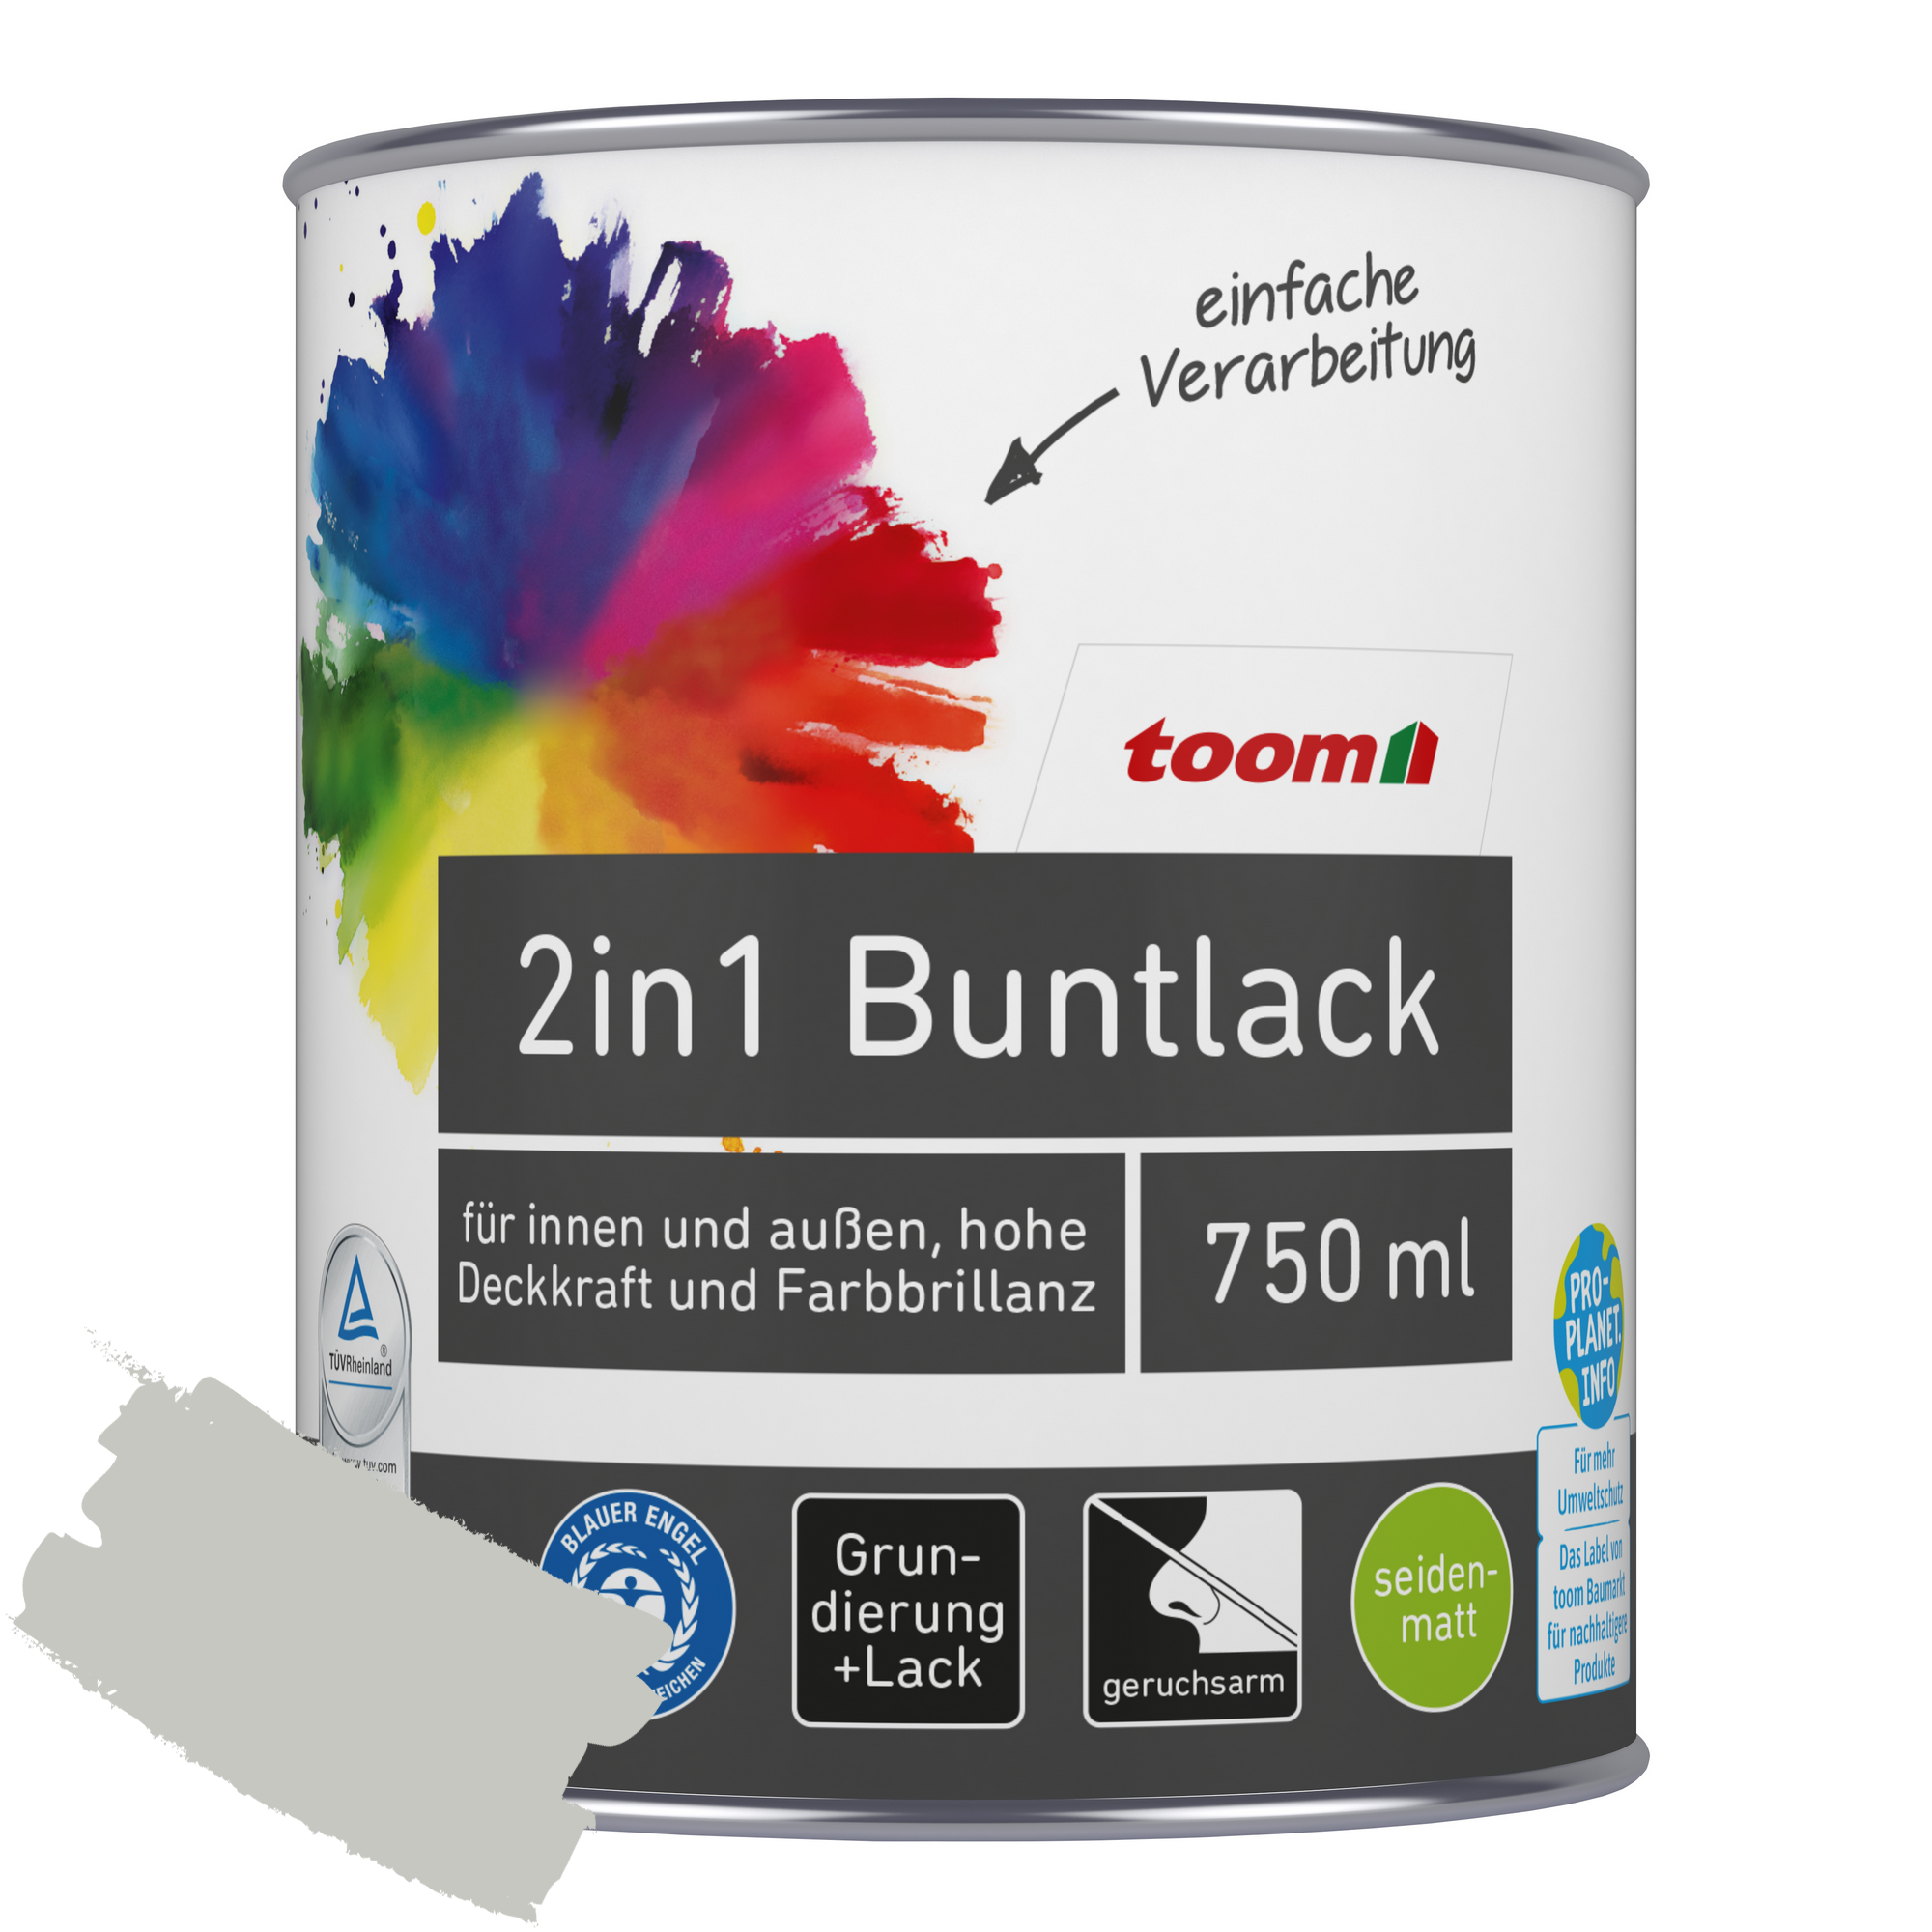 2in1 Buntlack 'Mondschein' lichtgrau seidenmatt 750 ml + product picture